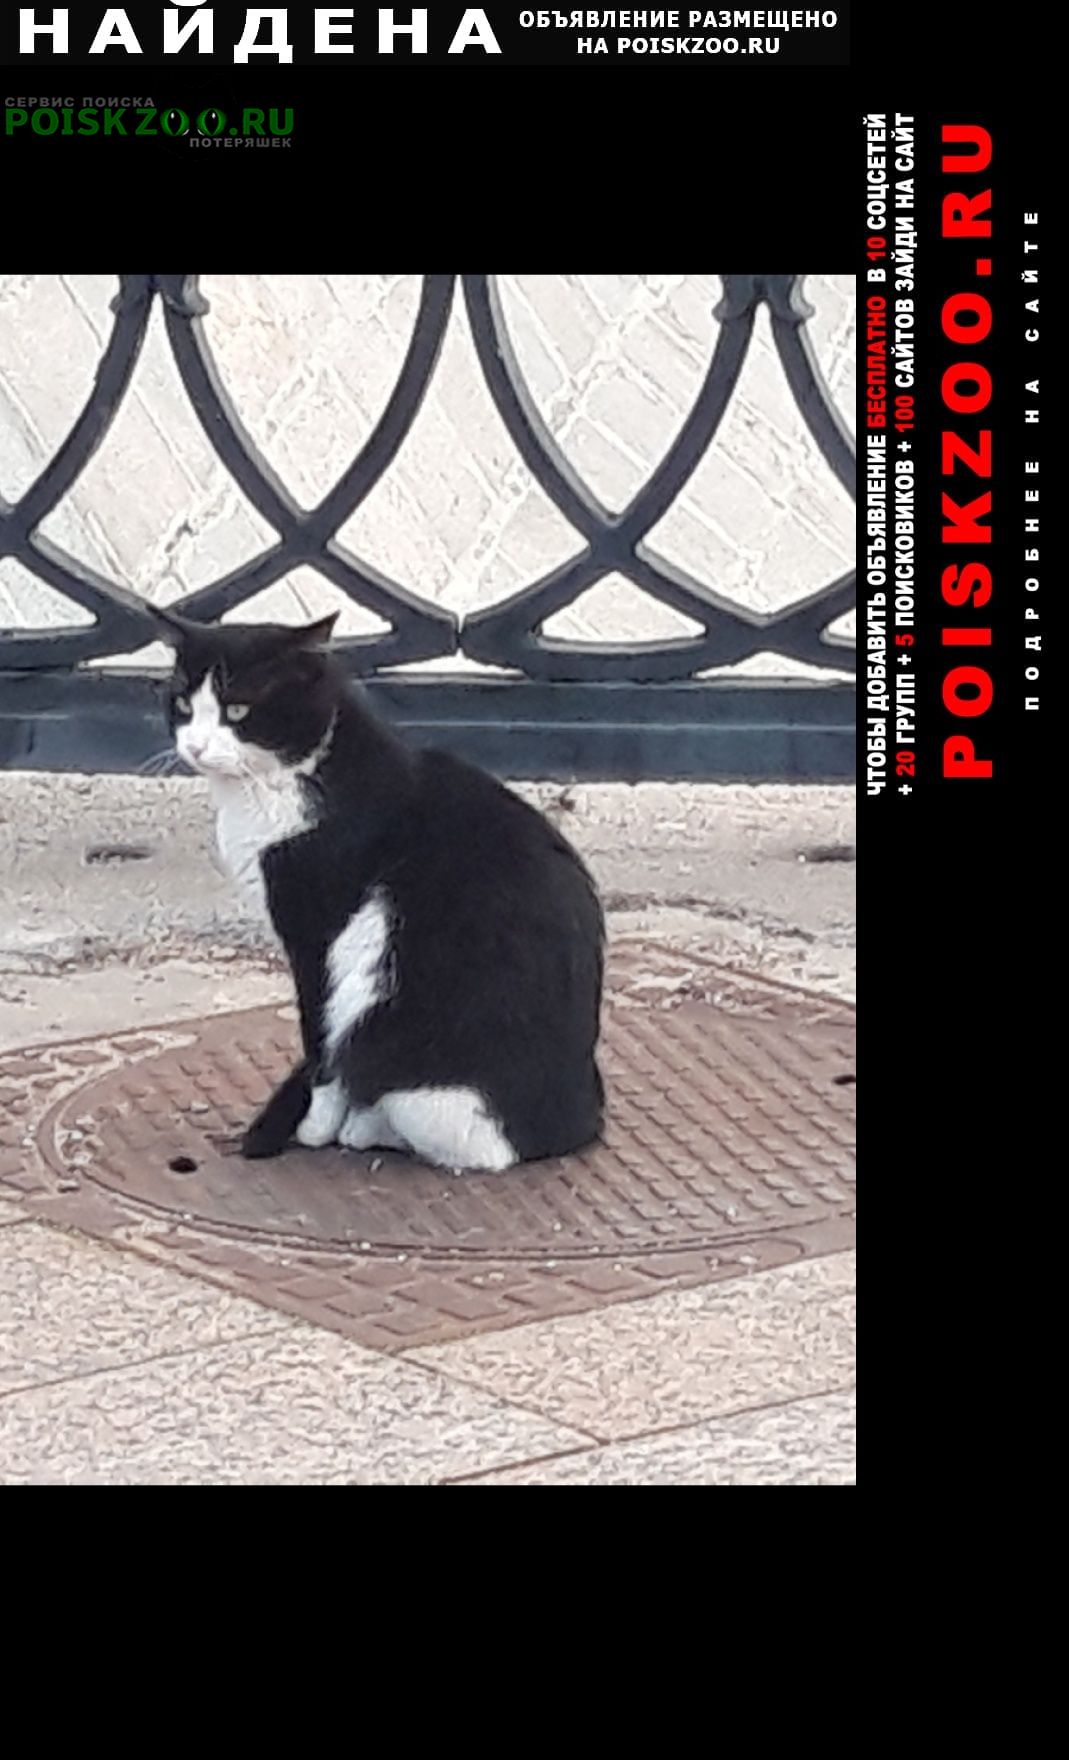 Найдена кошка вроде бы девочка, черно-белая Москва